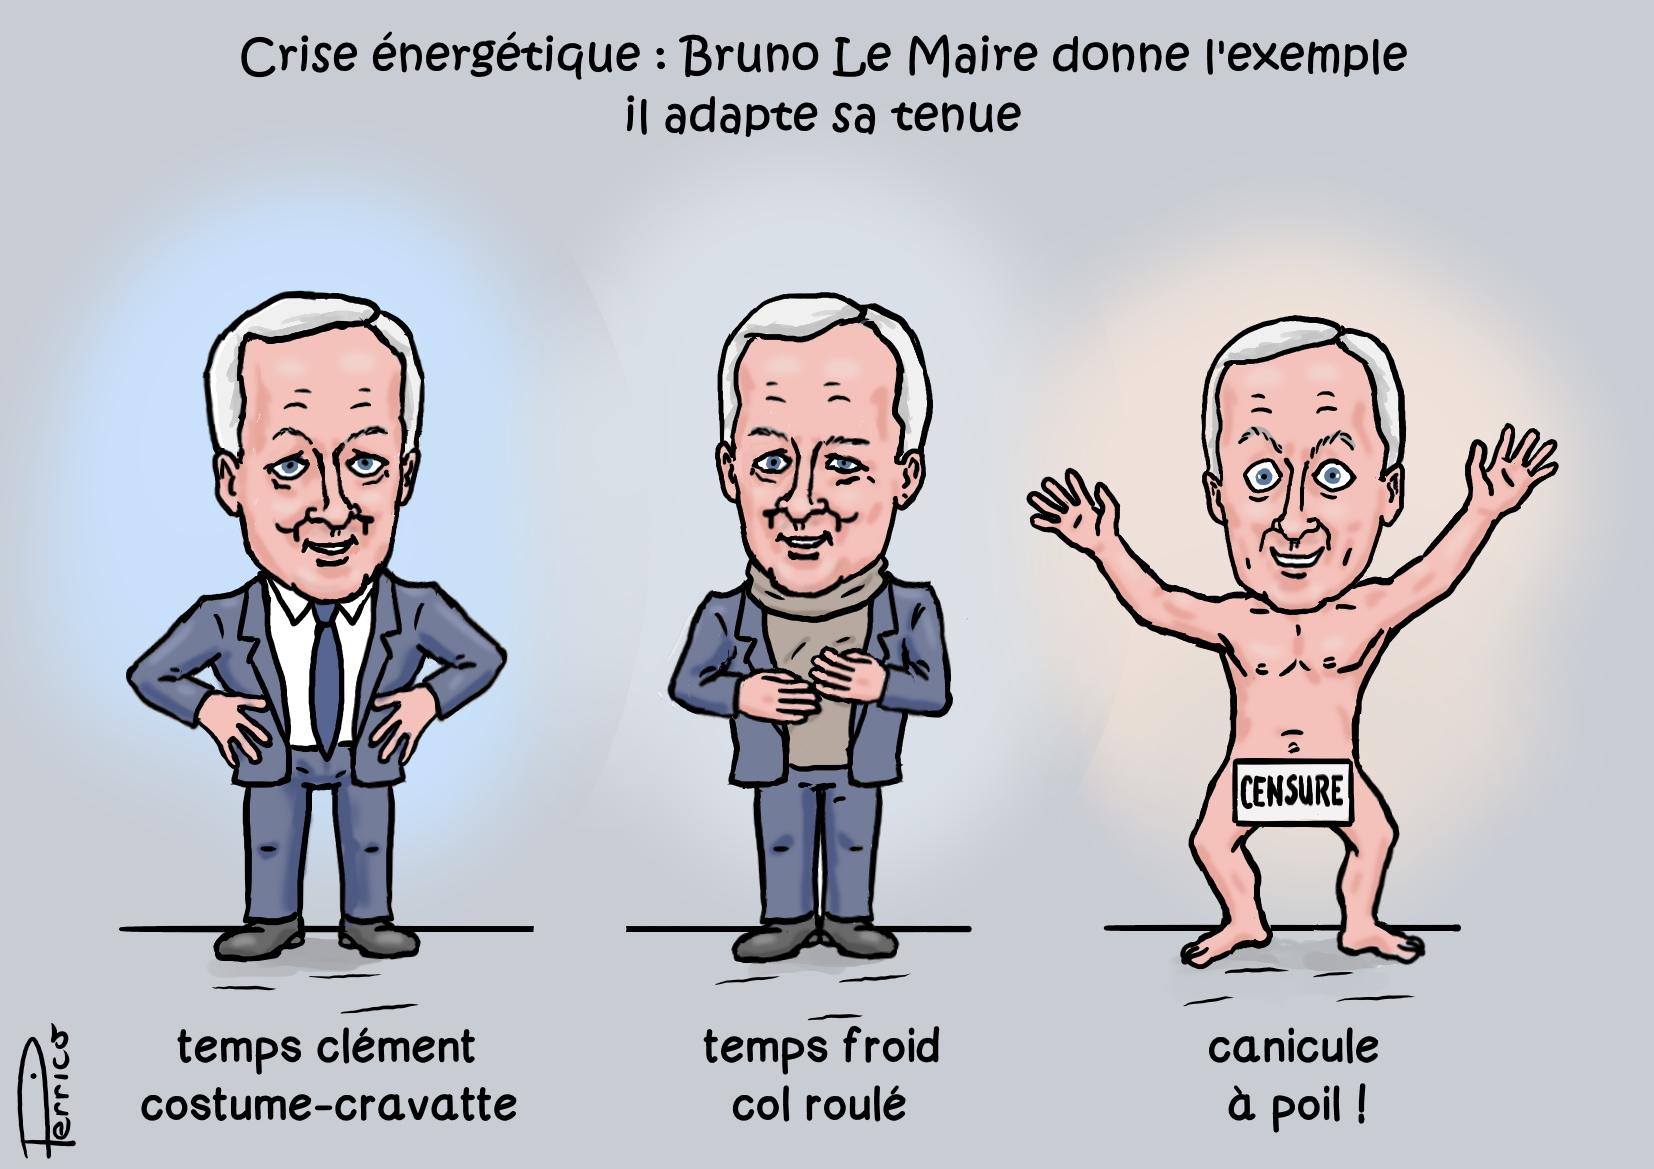 Bruno Le Maire en col roulé !